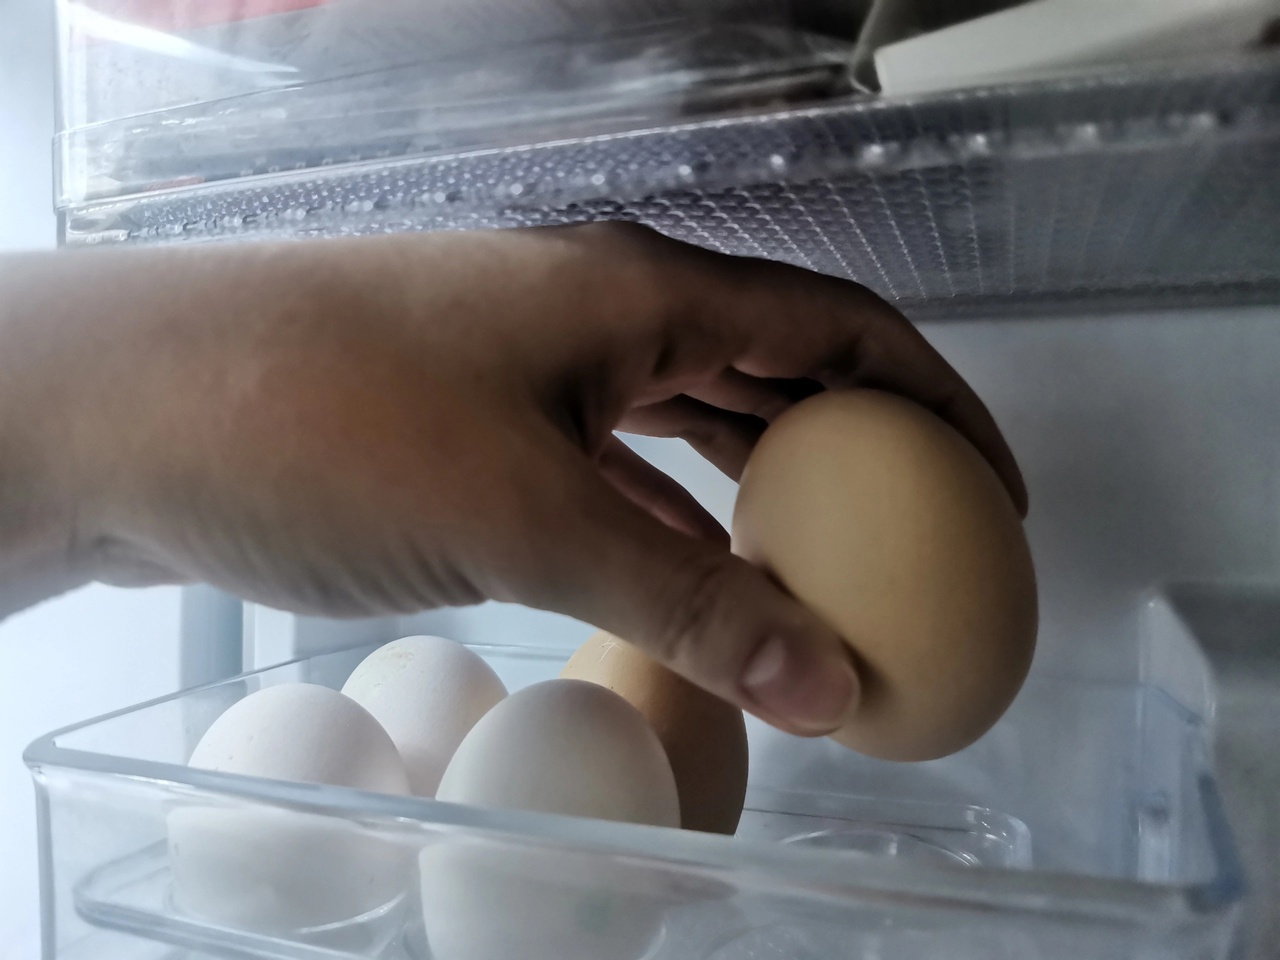 Архангельский Роспотребнадзор назвал яйца из Коми опасными: птицефабрика с этим несогласна